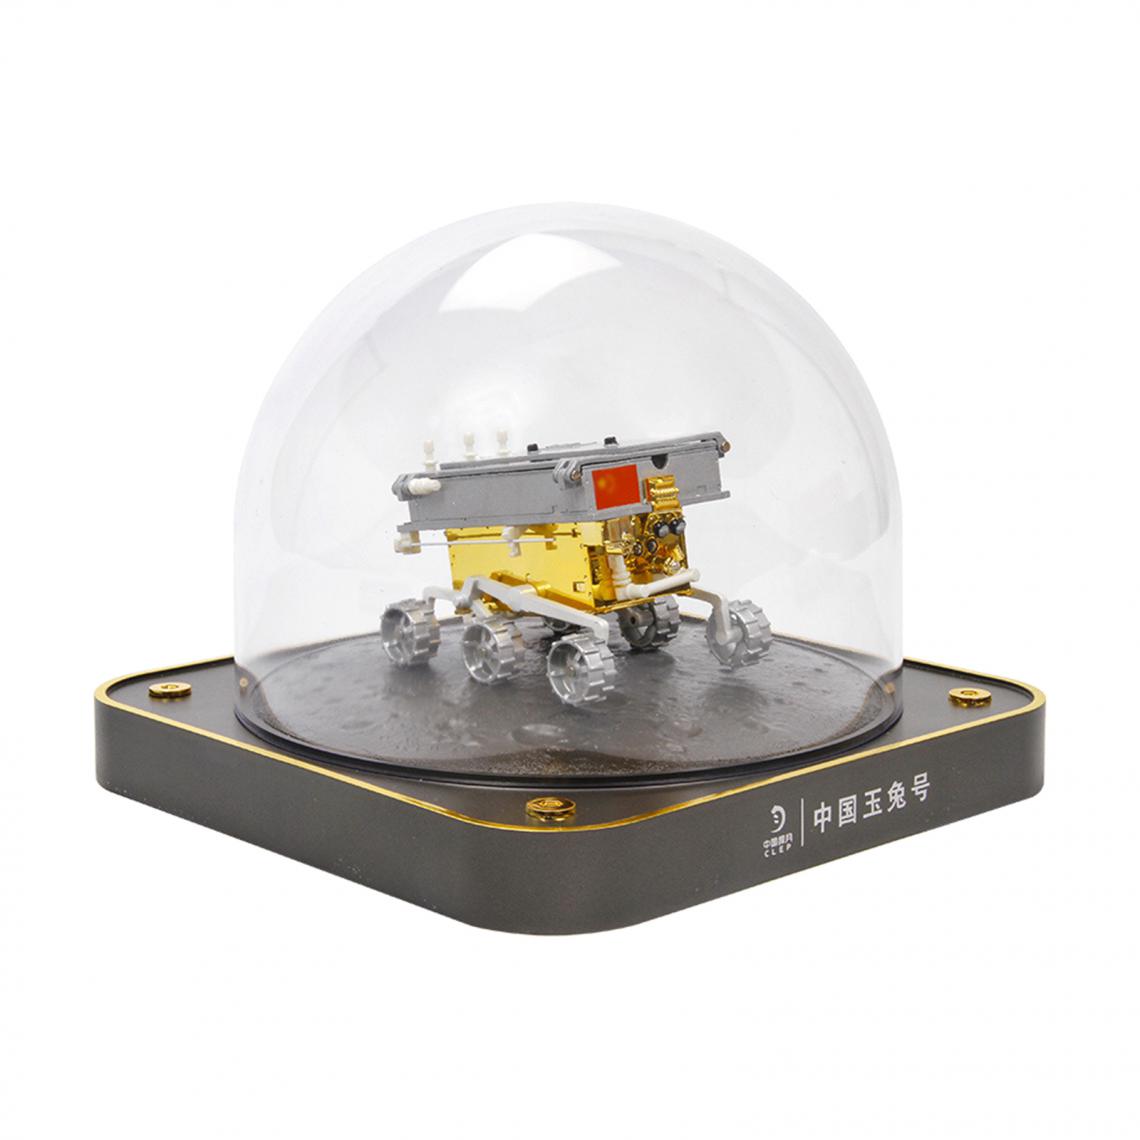 marque generique - 1:16 échelle Yutu Rover Modèle Lunaire Atterrissage Sonde Espace Alliage Sonde Modèle Passe-Temps Science Kit Jouets Éducatifs - Accessoires maquettes